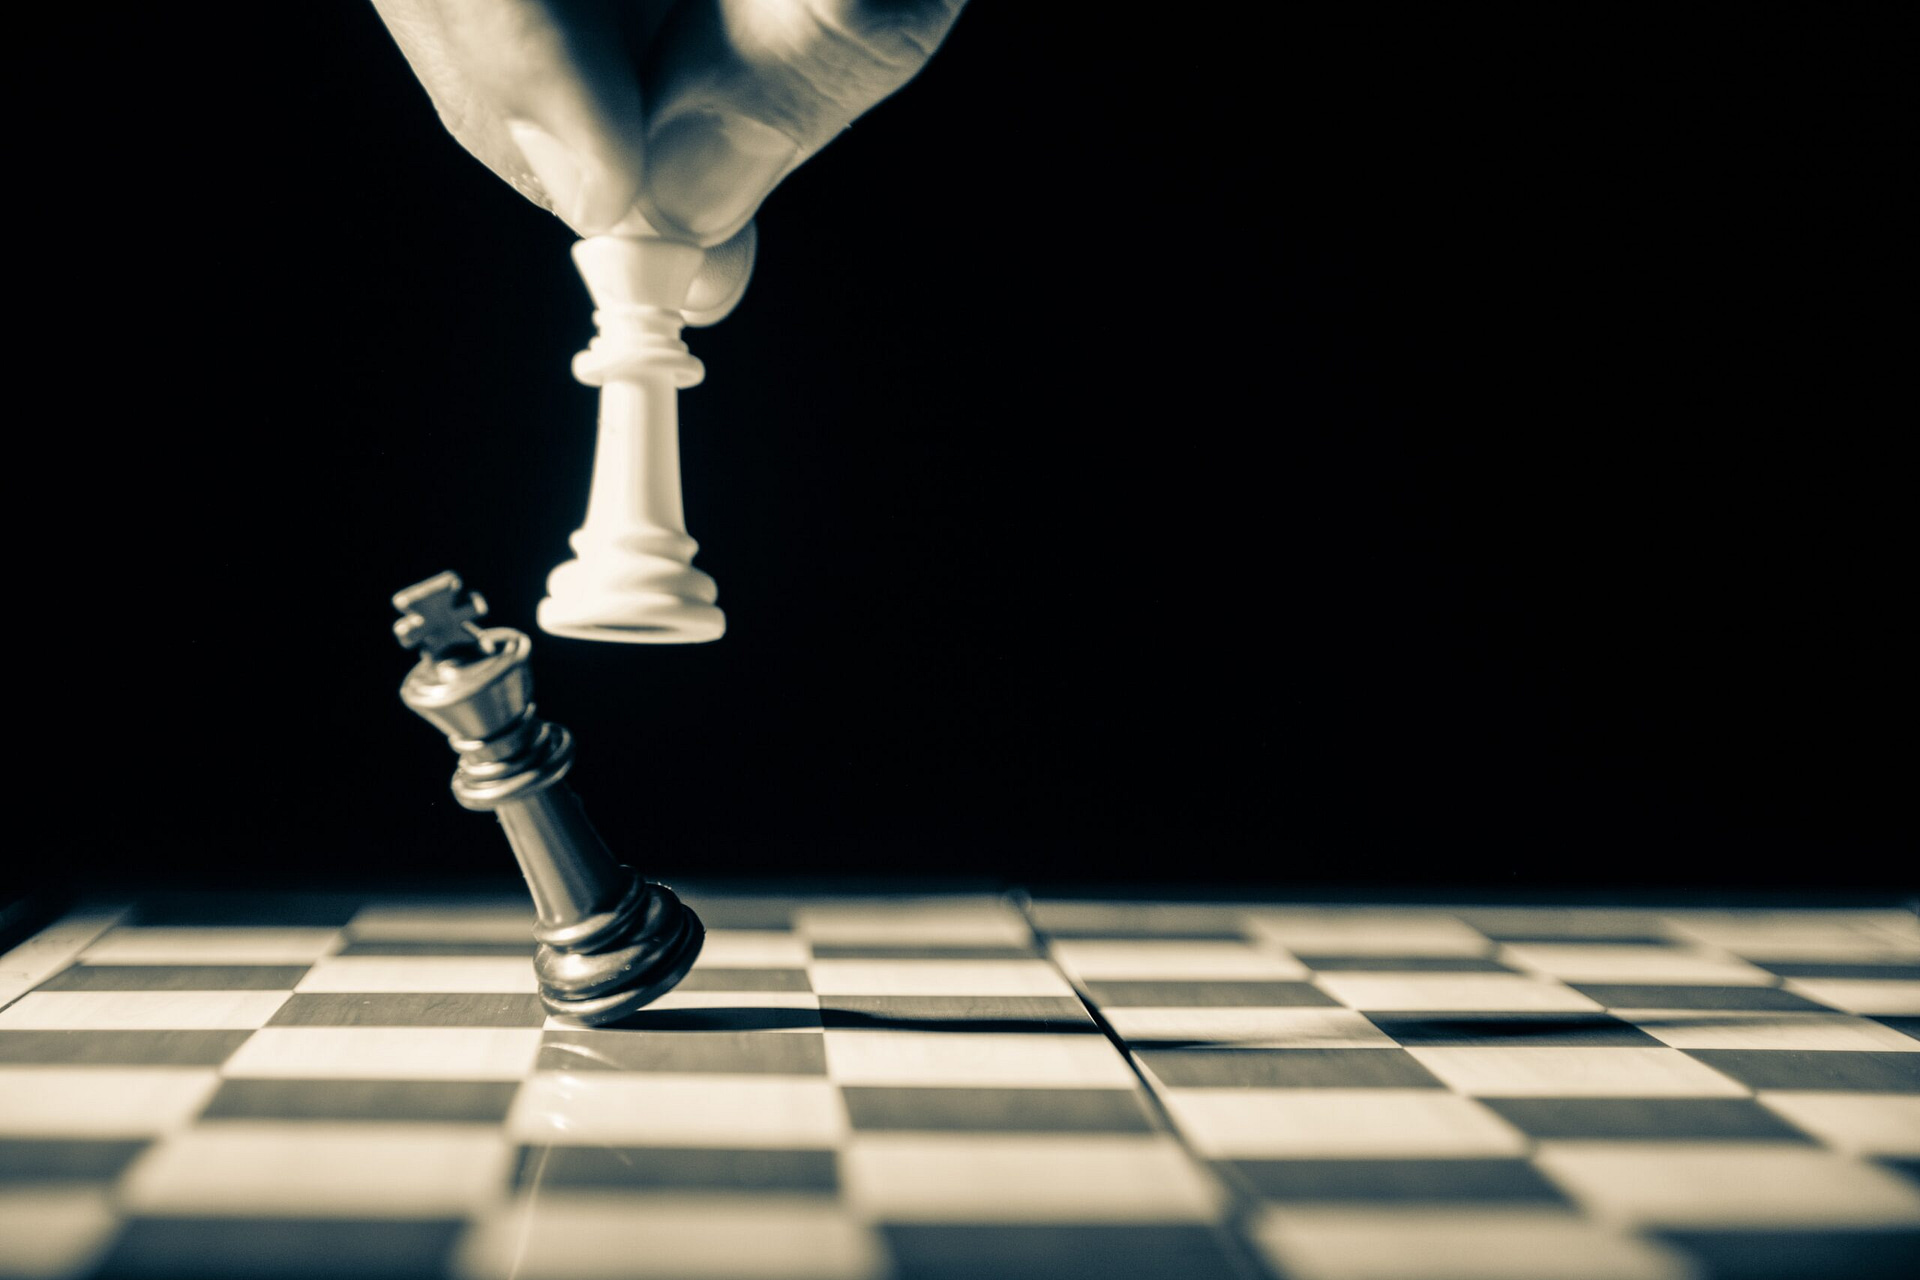 AlphaZero: Shedding new light on chess, shogi, and Go - Google